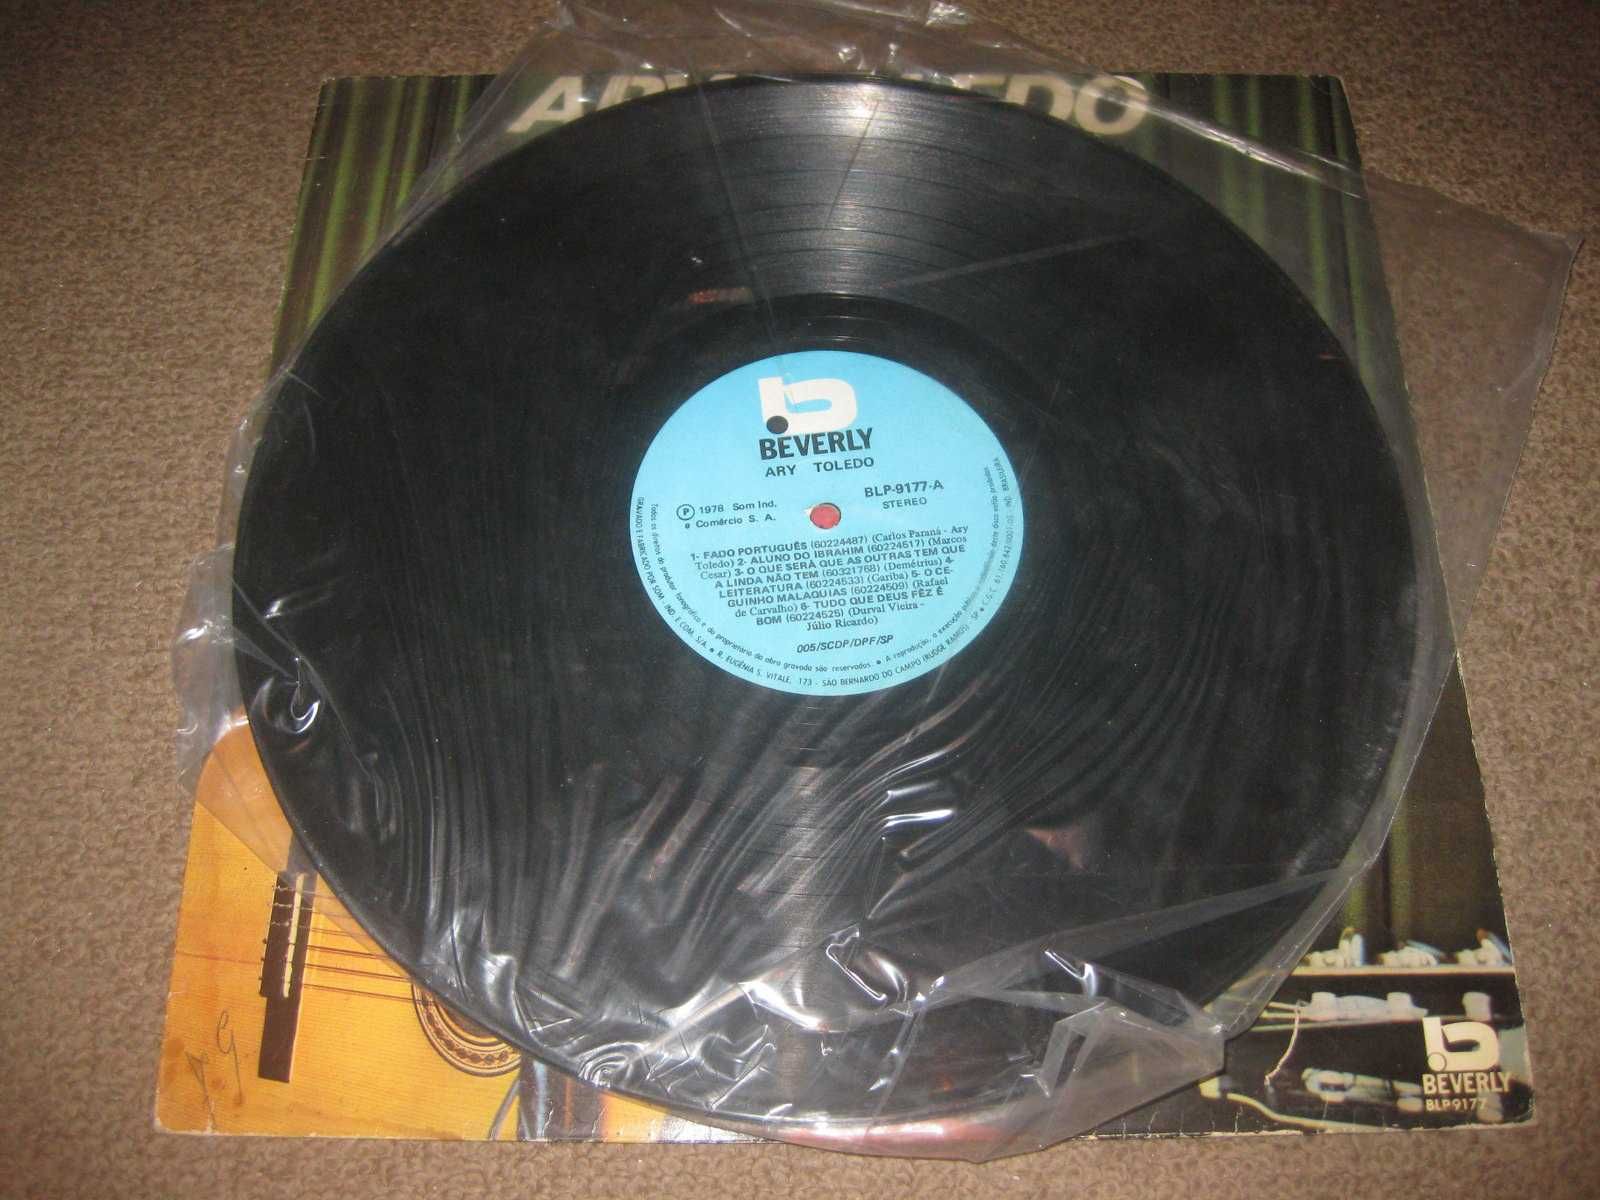 Vinil LP 33 rpm do Ary Toledo "Ary Toledo"